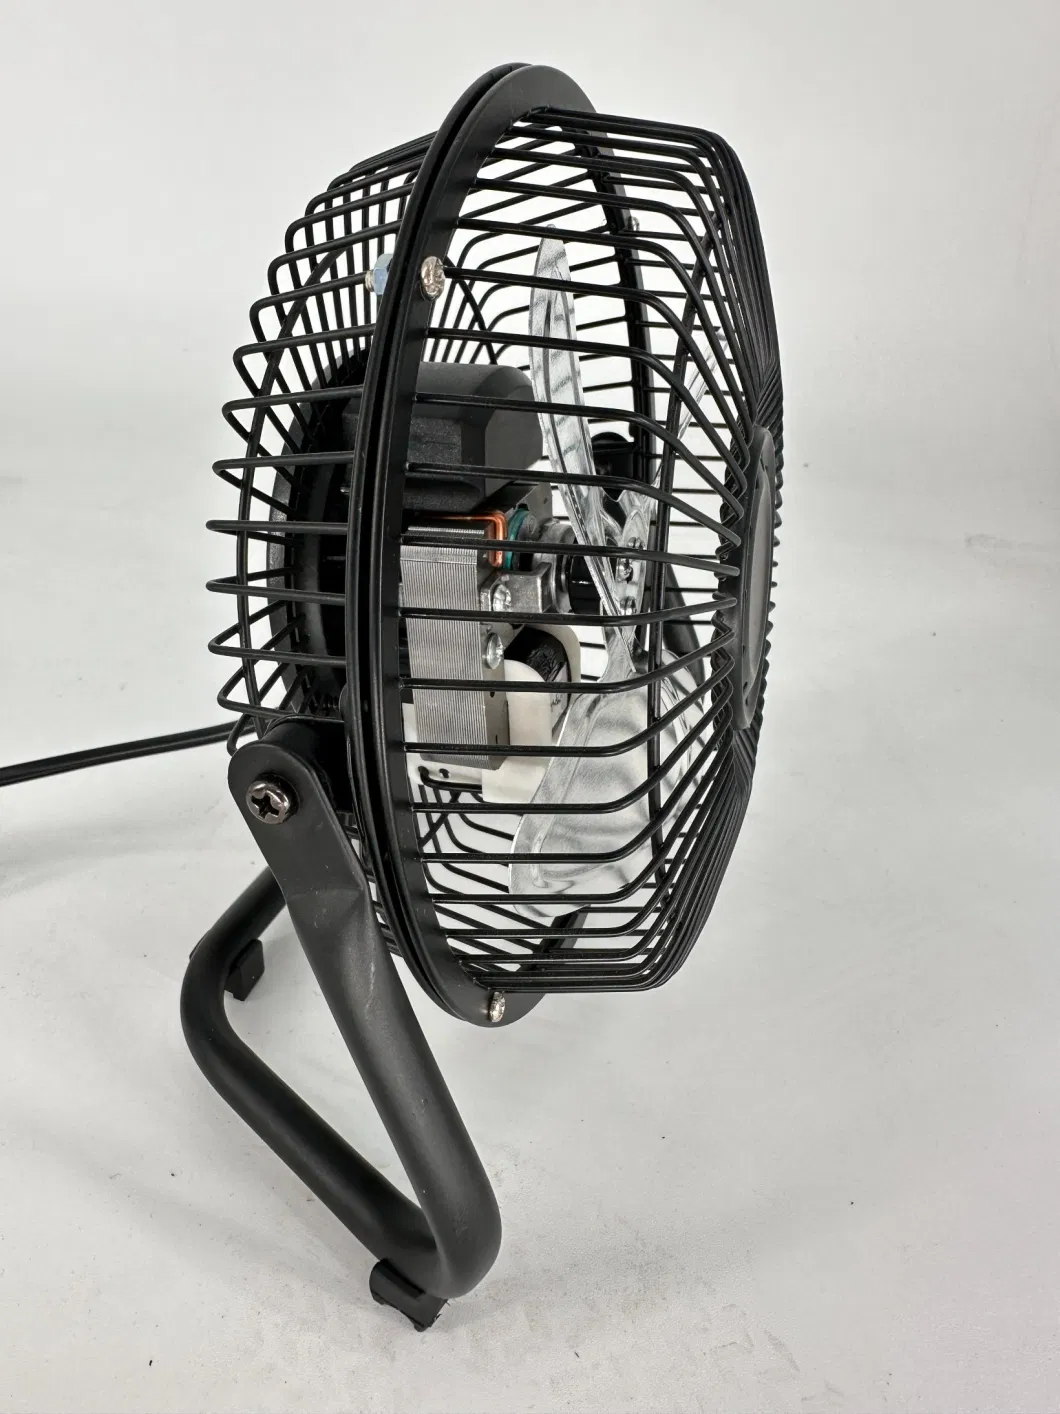 Full Materical 9inch Iron Floor Fan /High Speed Floor Fan/ Table Fan/ Oscillating Fan /Basic Customization Sample Customization Electric Fan DC Fan